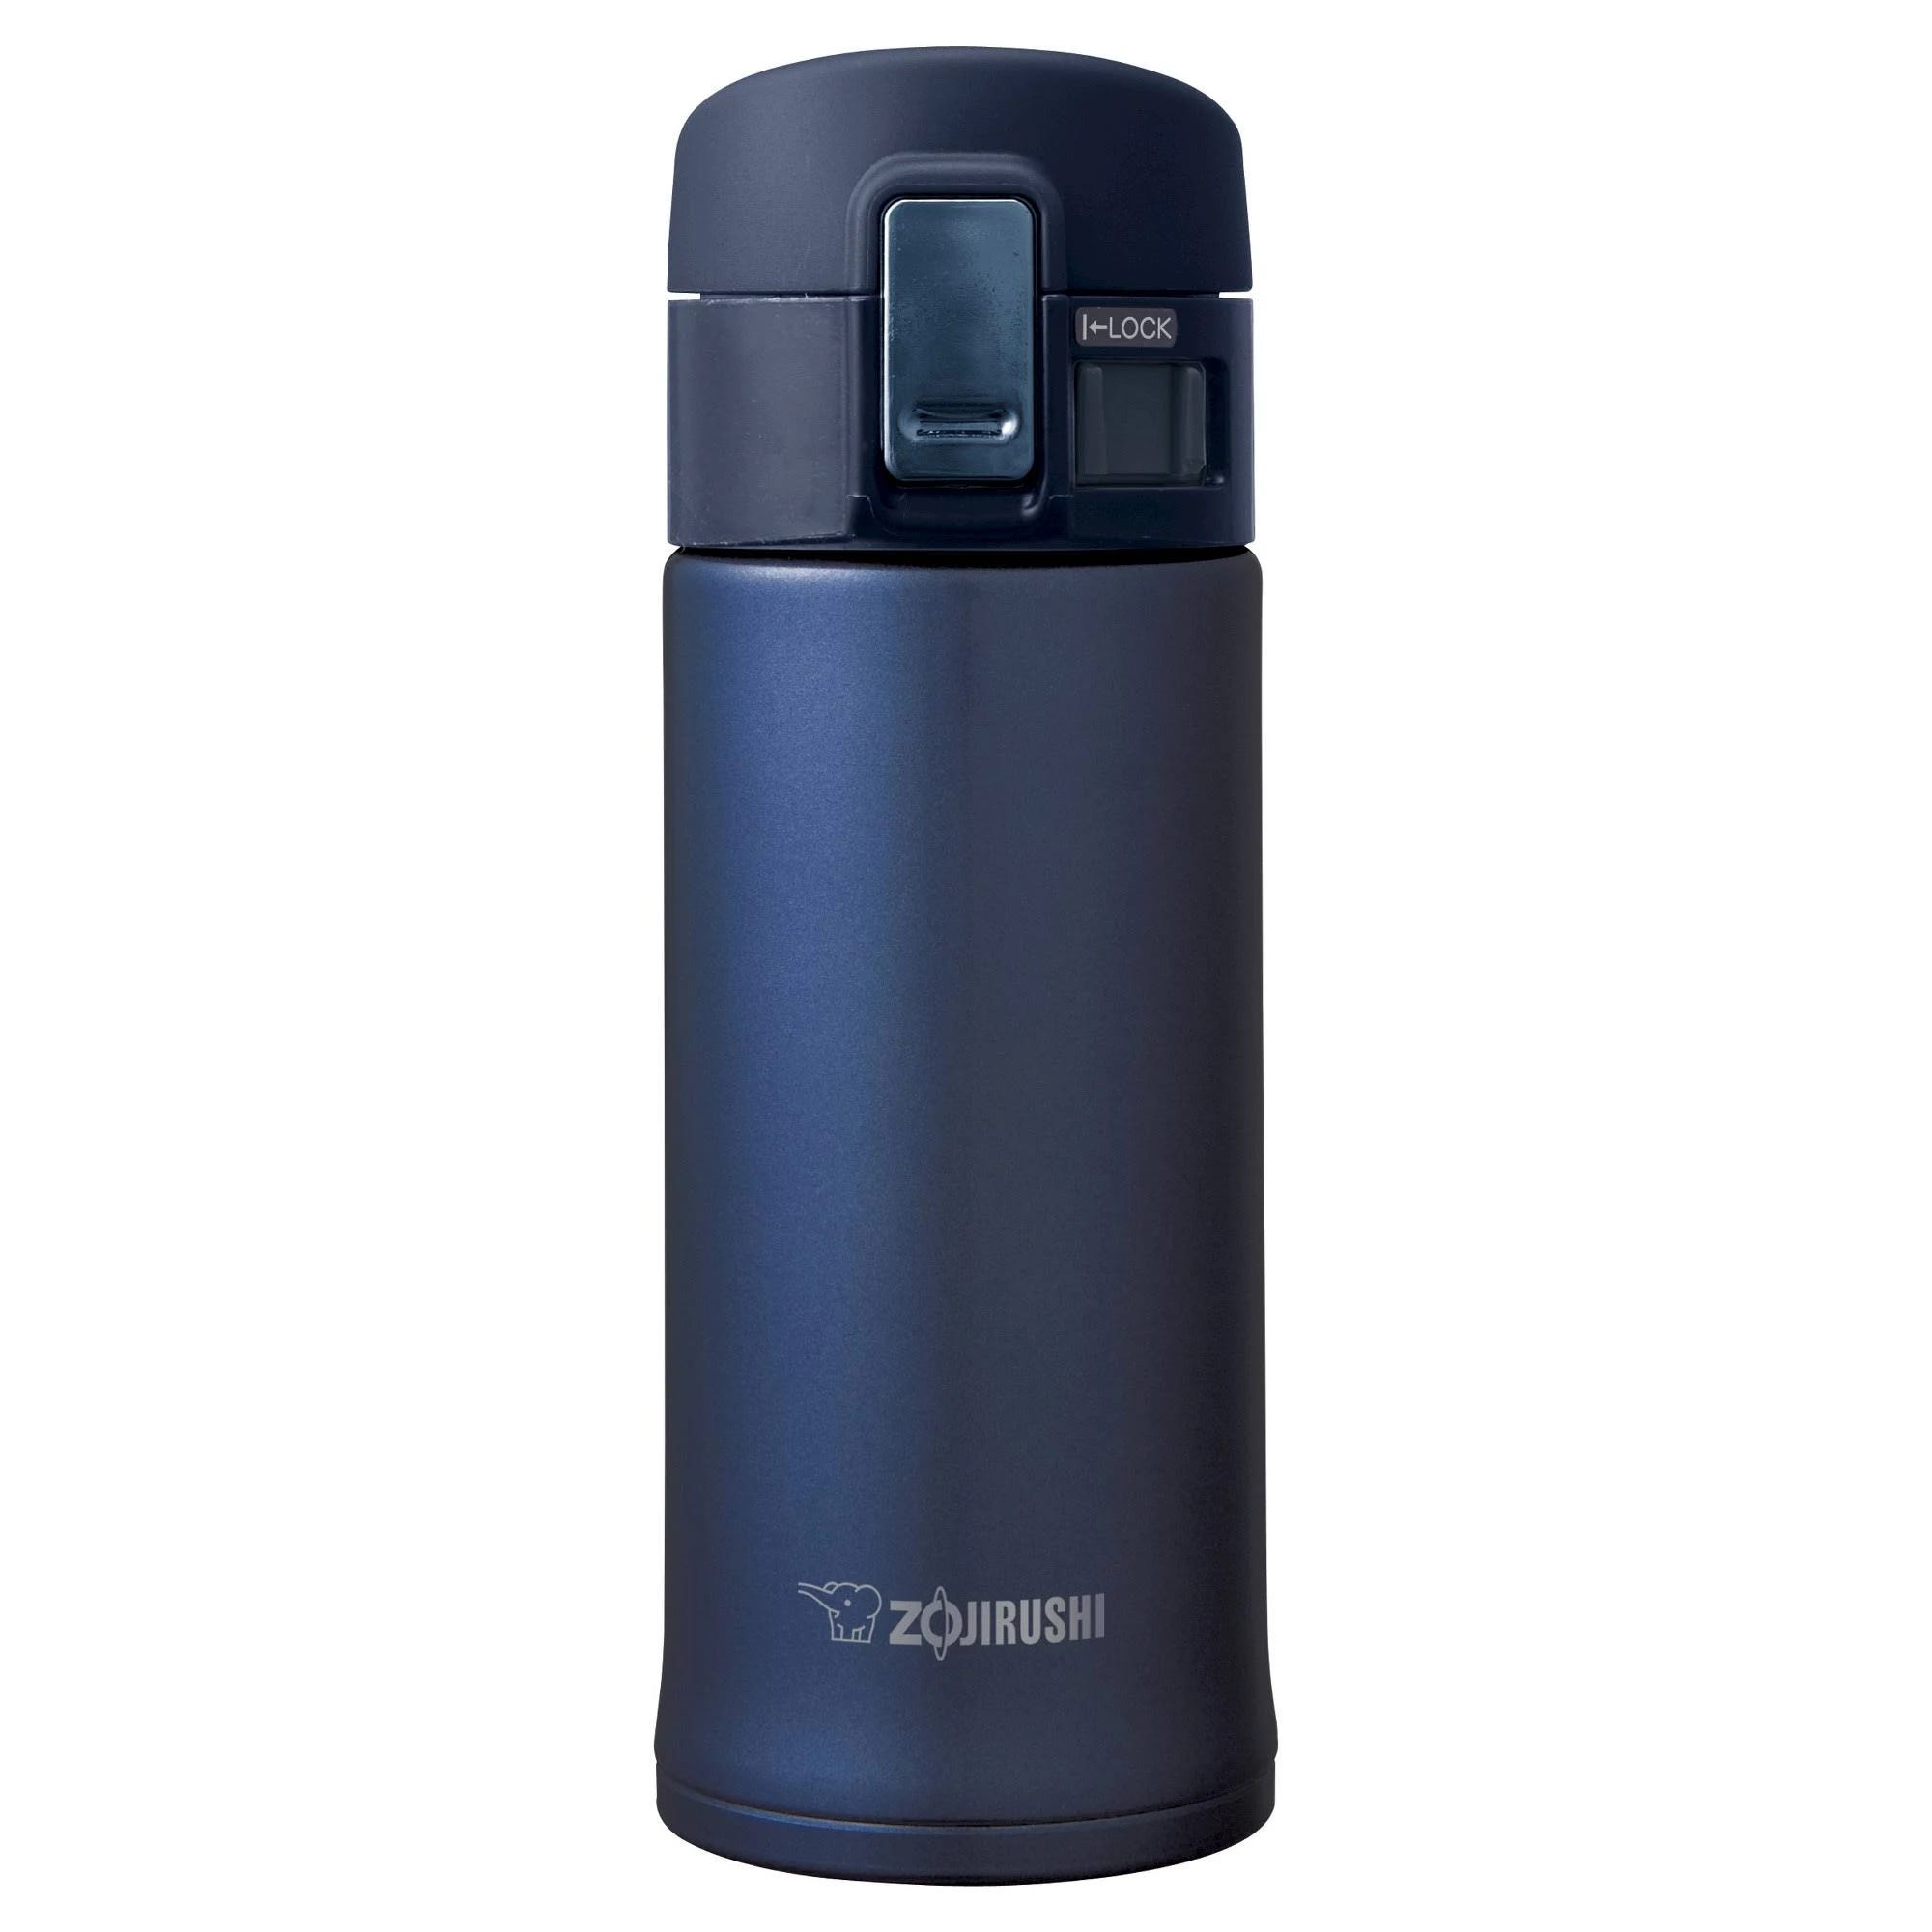 Zojirushi Portable Vacuum Insulated Mug: Stylish and Durable 12 oz Thermos with Safety Lock | Image